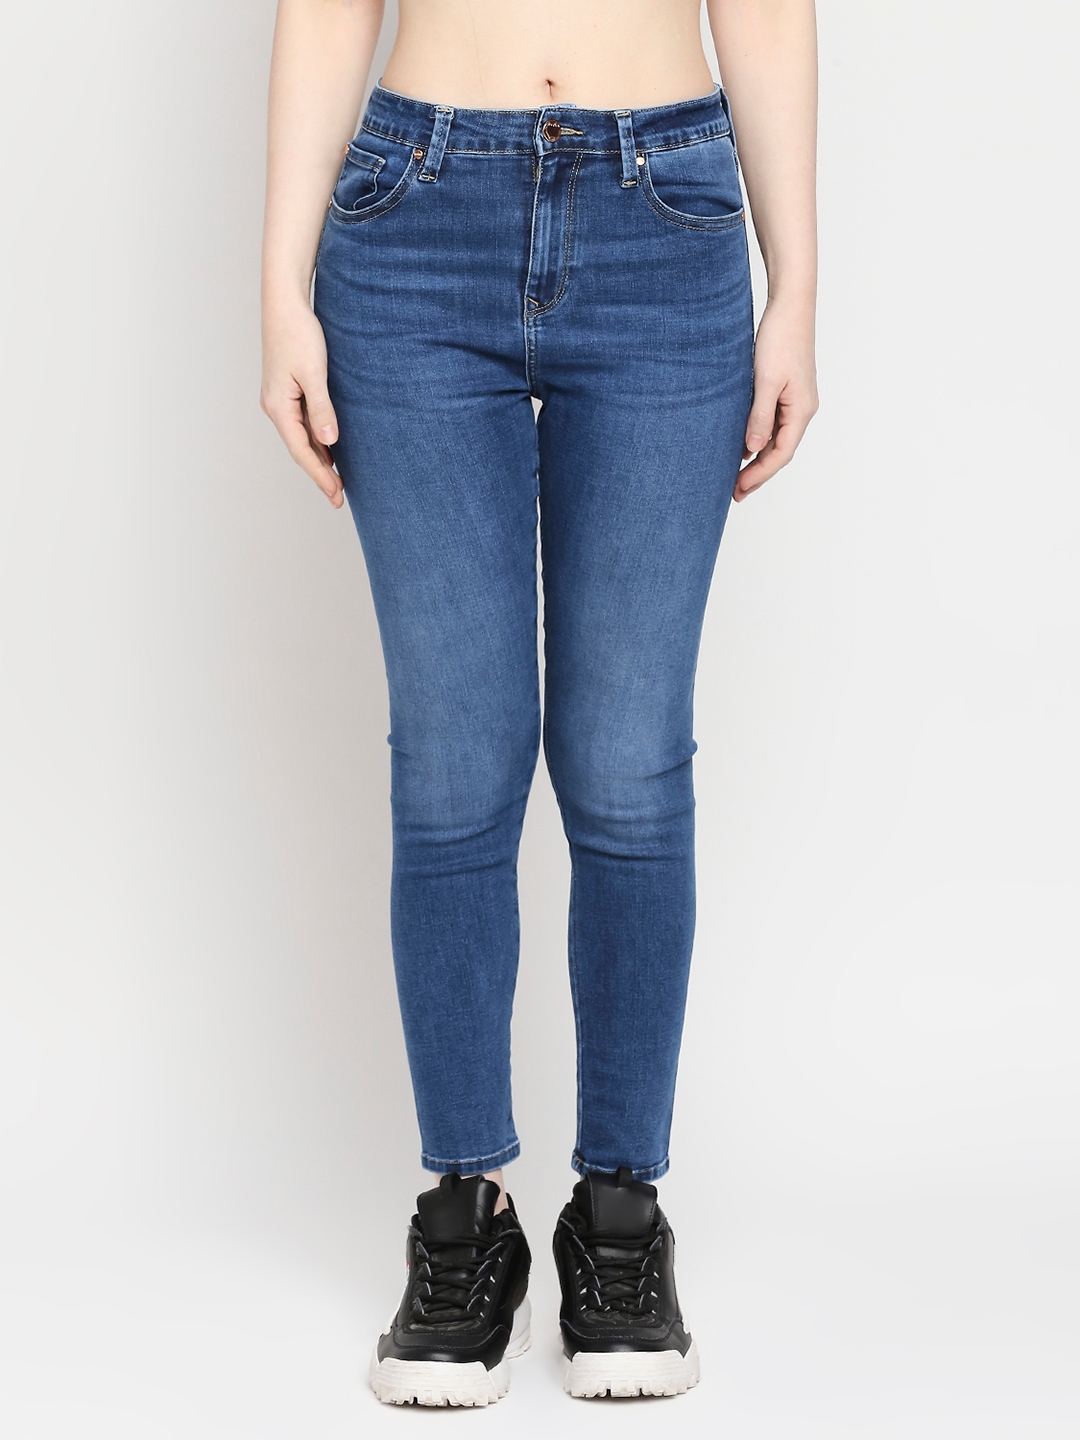 Women's Blue Cotton Solid Jeans